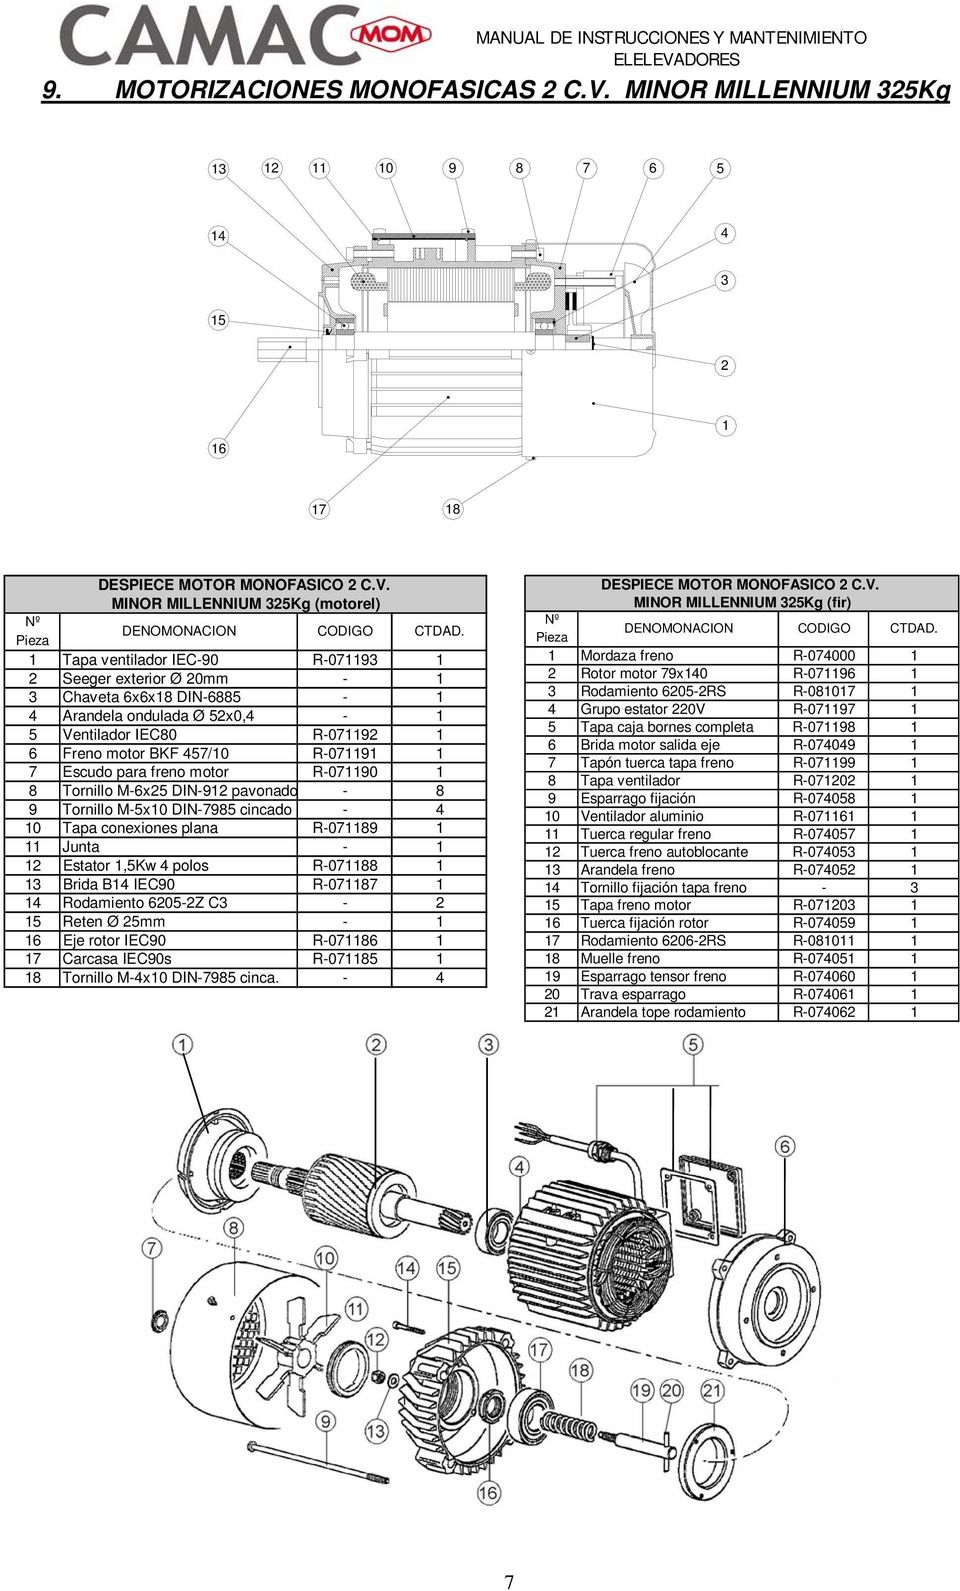 Tornillo M-x0 DIN- cincado - 0 Tapa conexiones plana R-0 Junta - Estator,Kw polos R-0 Brida B IEC0 R-0 Rodamiento 0-Z C - Reten Ø mm - Eje rotor IEC0 R-0 Carcasa IEC0s R-0 Tornillo M-x0 DIN- cinca.